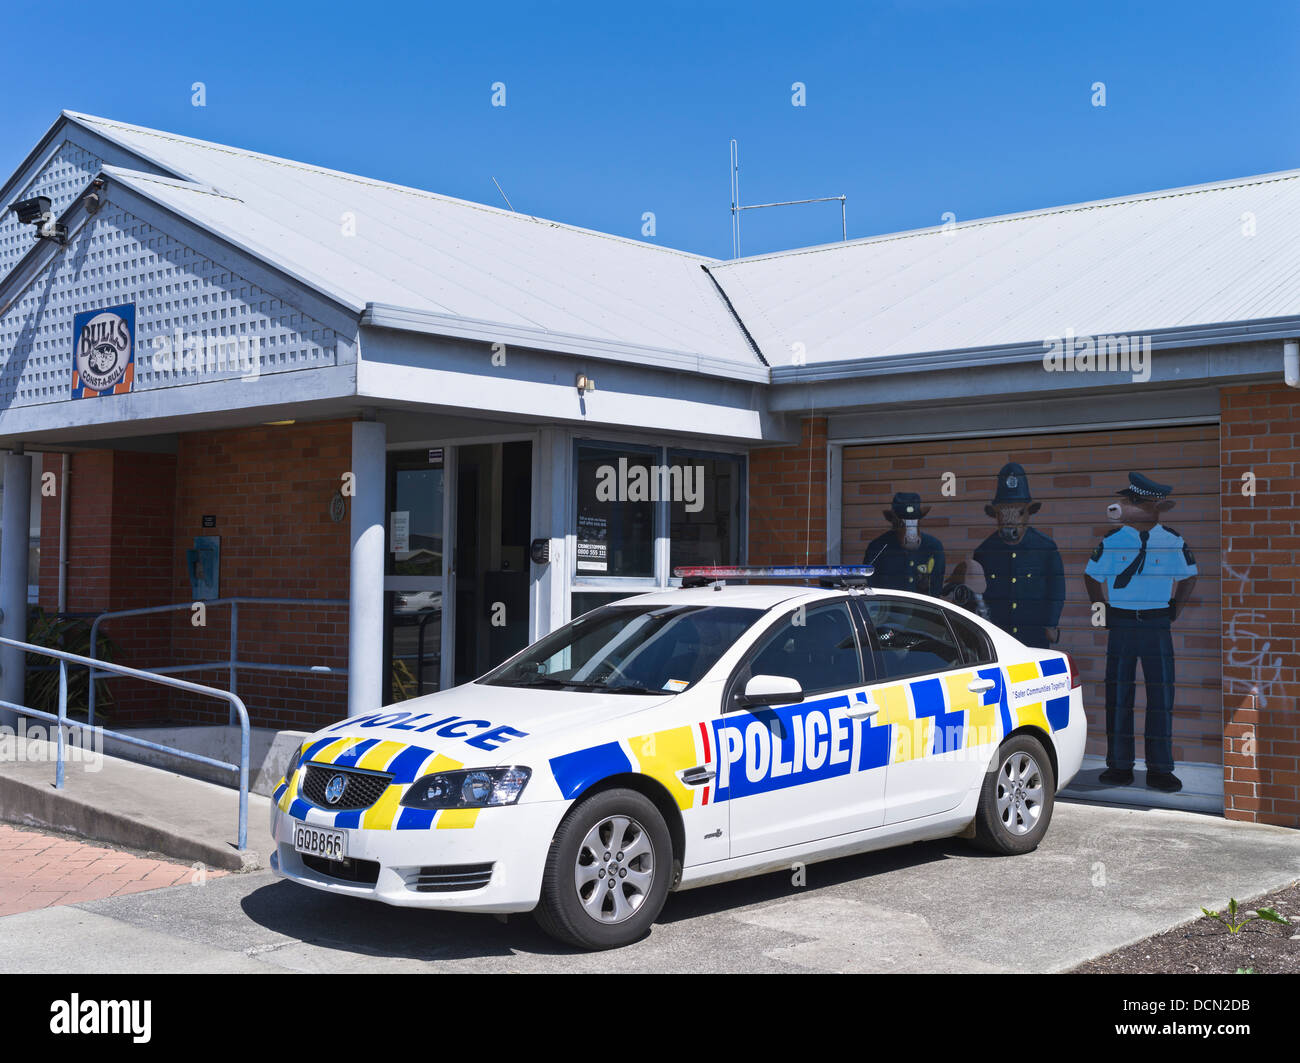 Dh BULLS Bulls ConstABull Nouvelle-zélande NZ et de police voiture de police Banque D'Images